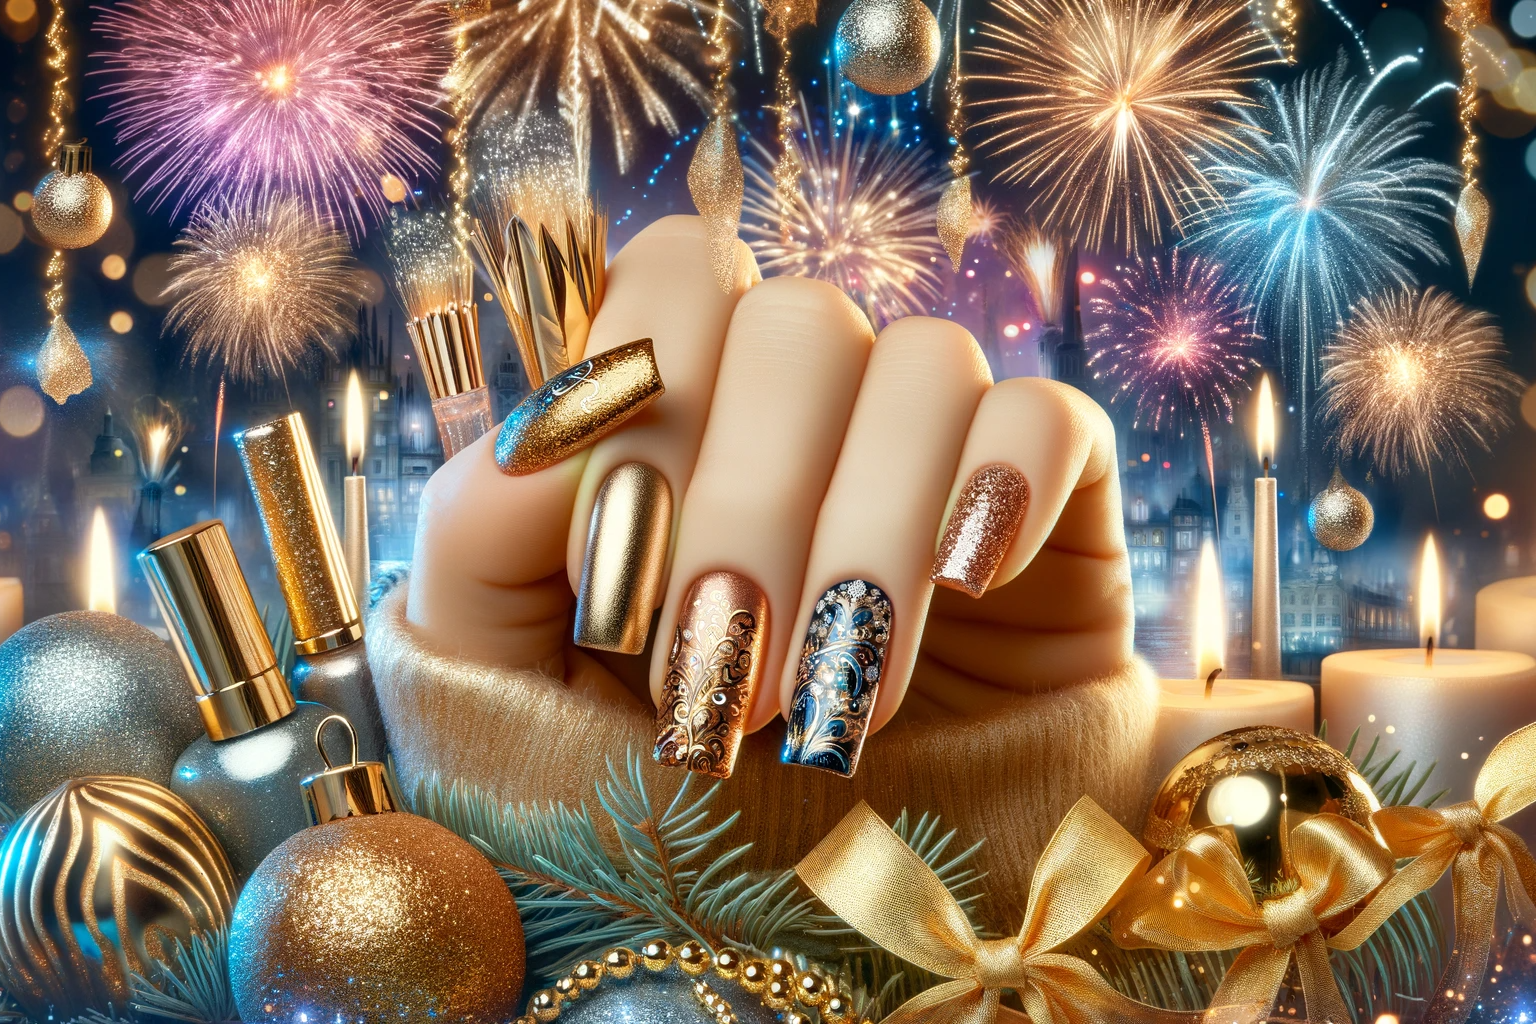 Zaczarowane stylizacje paznokci na Sylwestra w złotym brokacie, na tle bajkowej sceny noworocznej z żywymi fajerwerkami i glamour atmosferą, idealne dla artykułu o stylizacjach na Nowy Rok